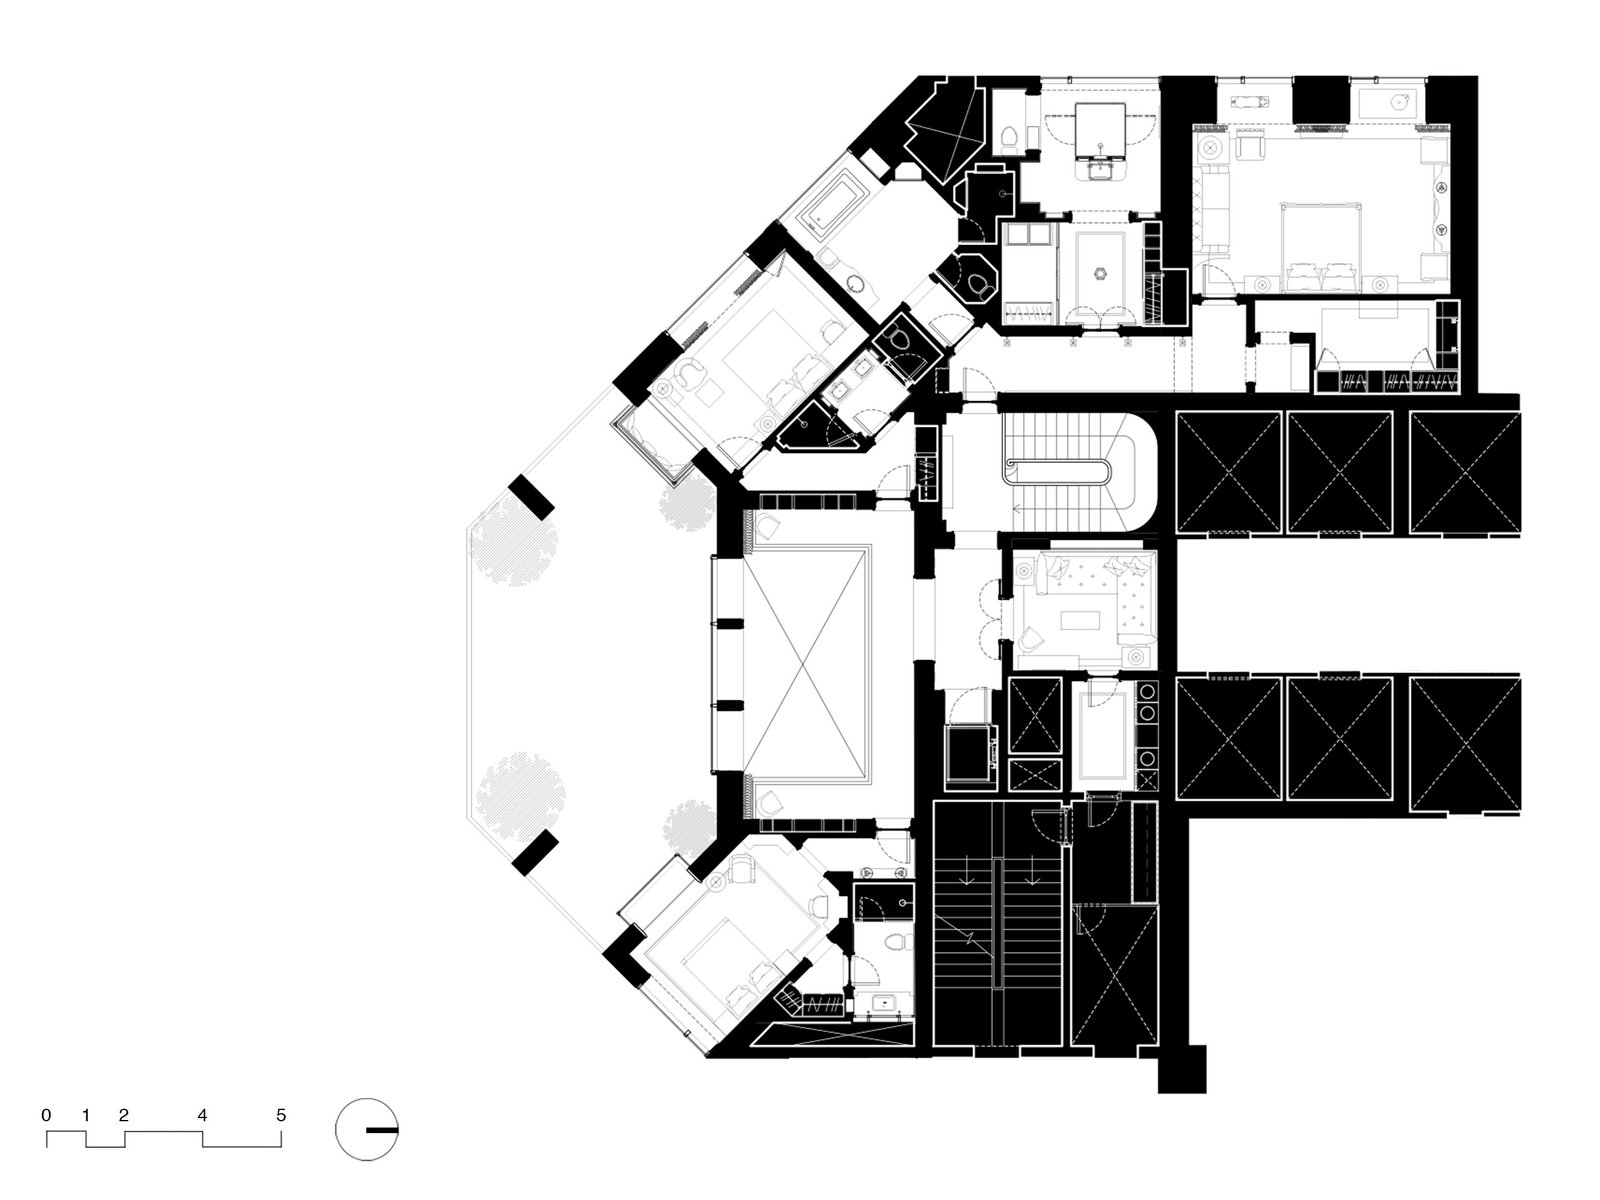 floor plan duplex apartment interior mumbai india